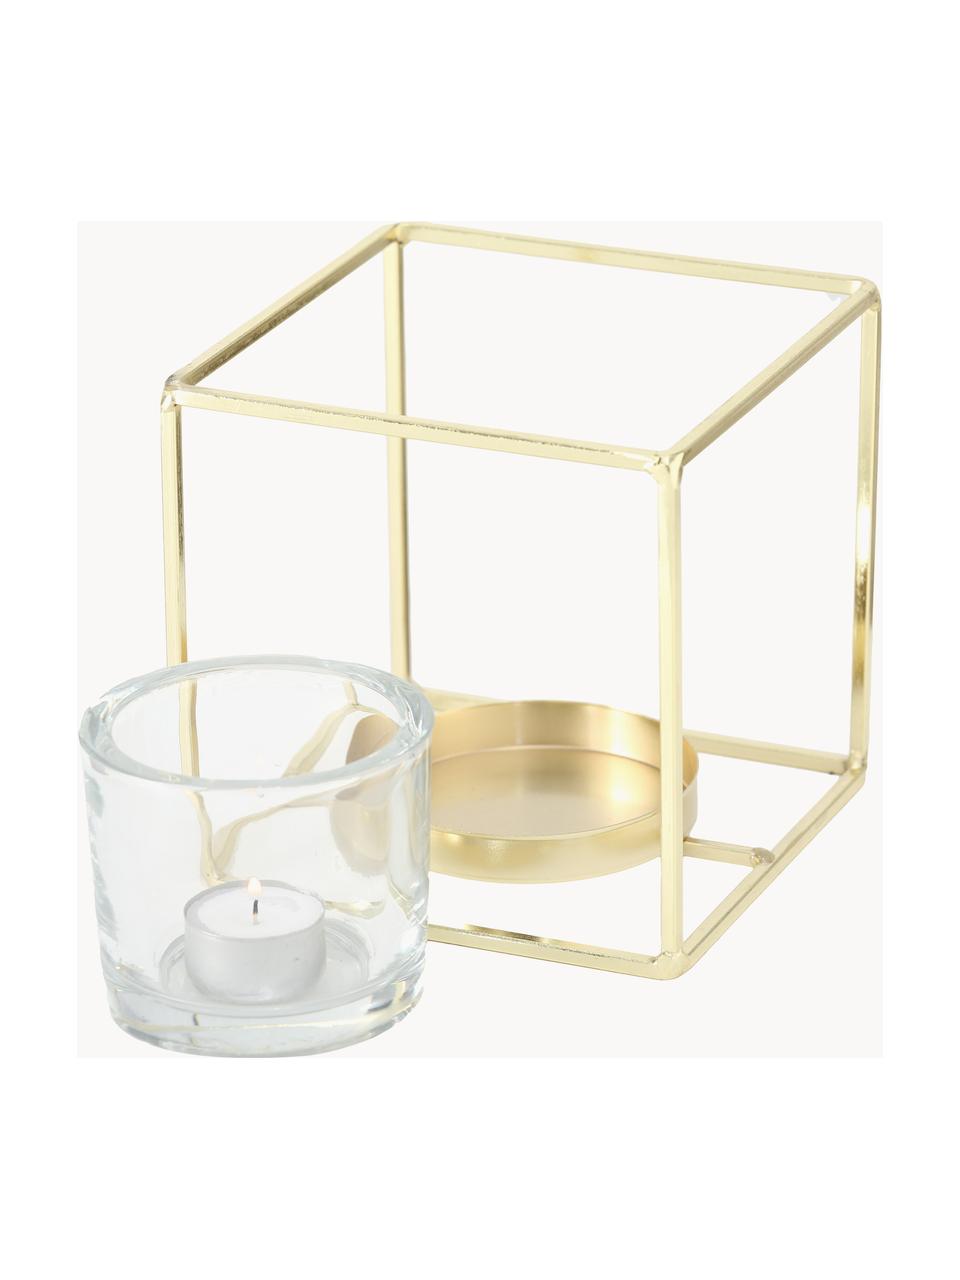 Teelichthalter-Set Pazo, 2-tlg., Windlicht: Glas, Gestell: Metall, beschichtet, Goldfarben, Set mit verschiedenen Grössen